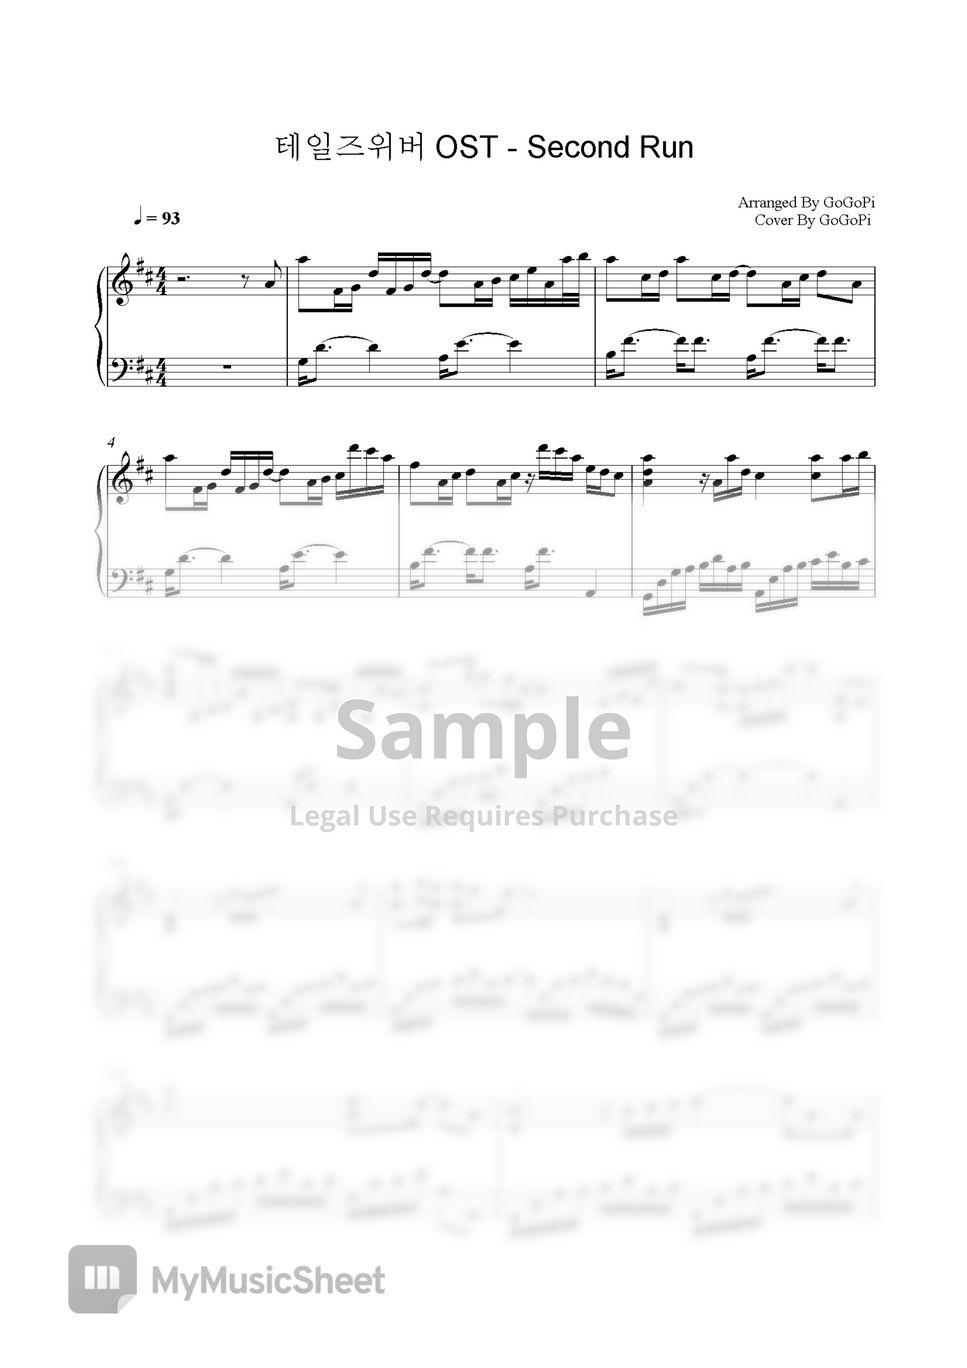 Talesweaver OST - Second Run (Piano Version) by GoGoPiano